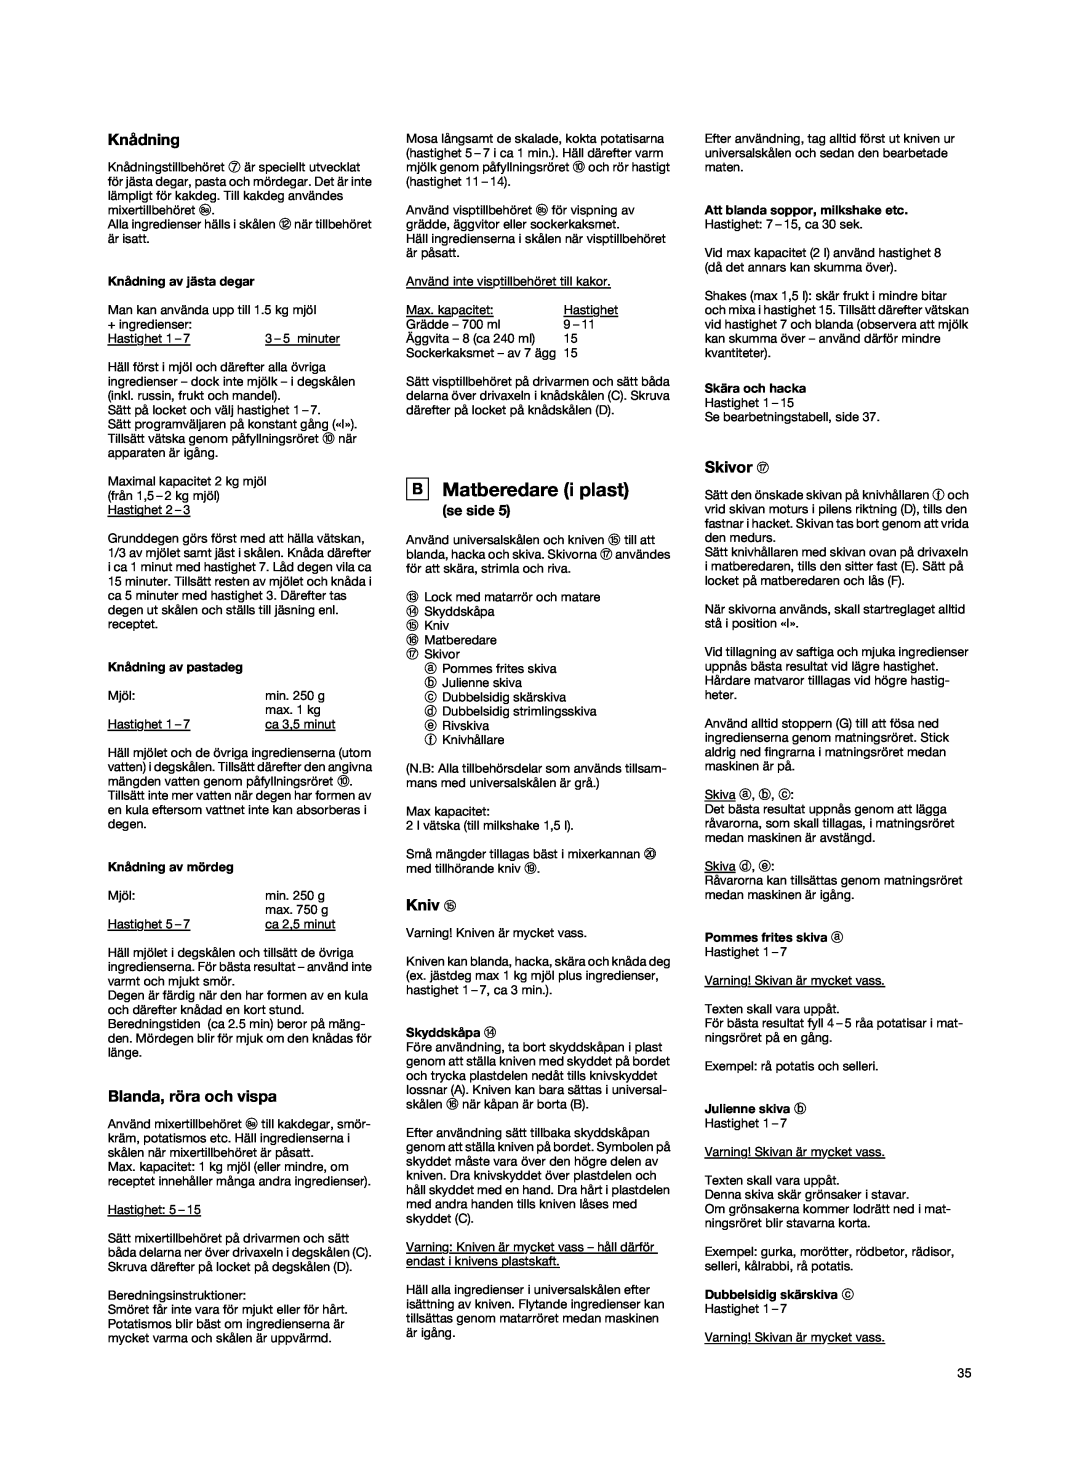 Braun K3000 manual B Matberedare i plast, Knådning, Blanda, röra och vispa, Kniv o, Skivor q, se side 